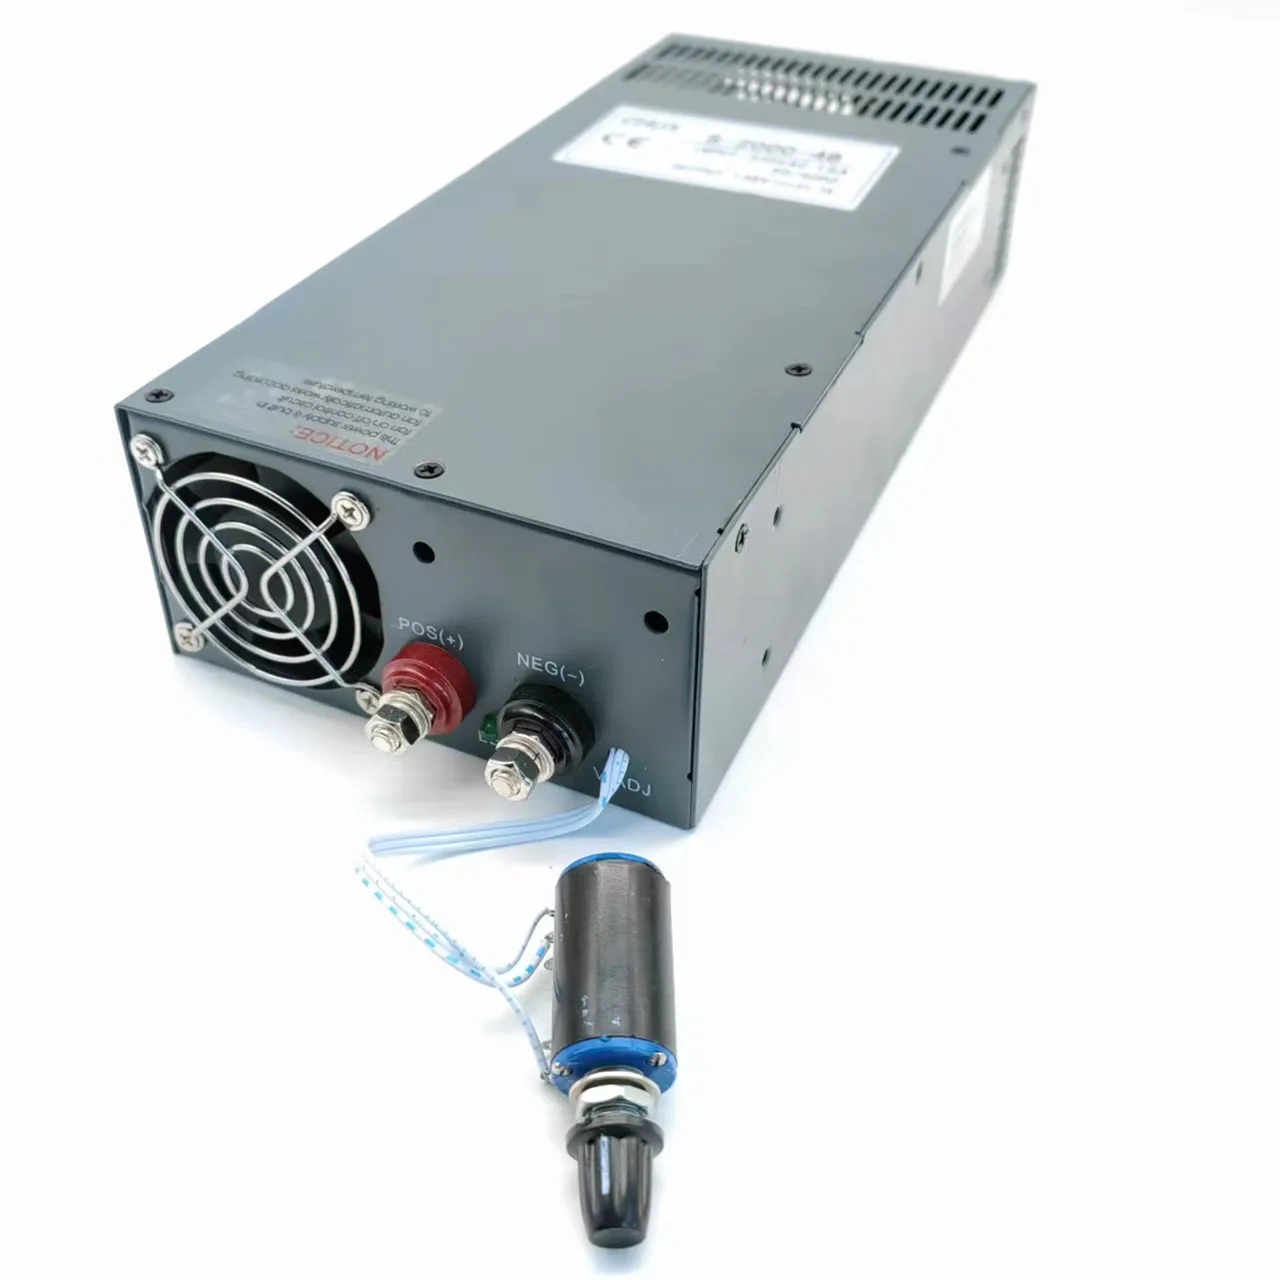 CHUX   2000W 1500W 1000W Adjustable Switching Power Supply  220VAC To DC 12V 24V 27V 36V 48V 72V 100V 150V 110V 200V 300V SMPS